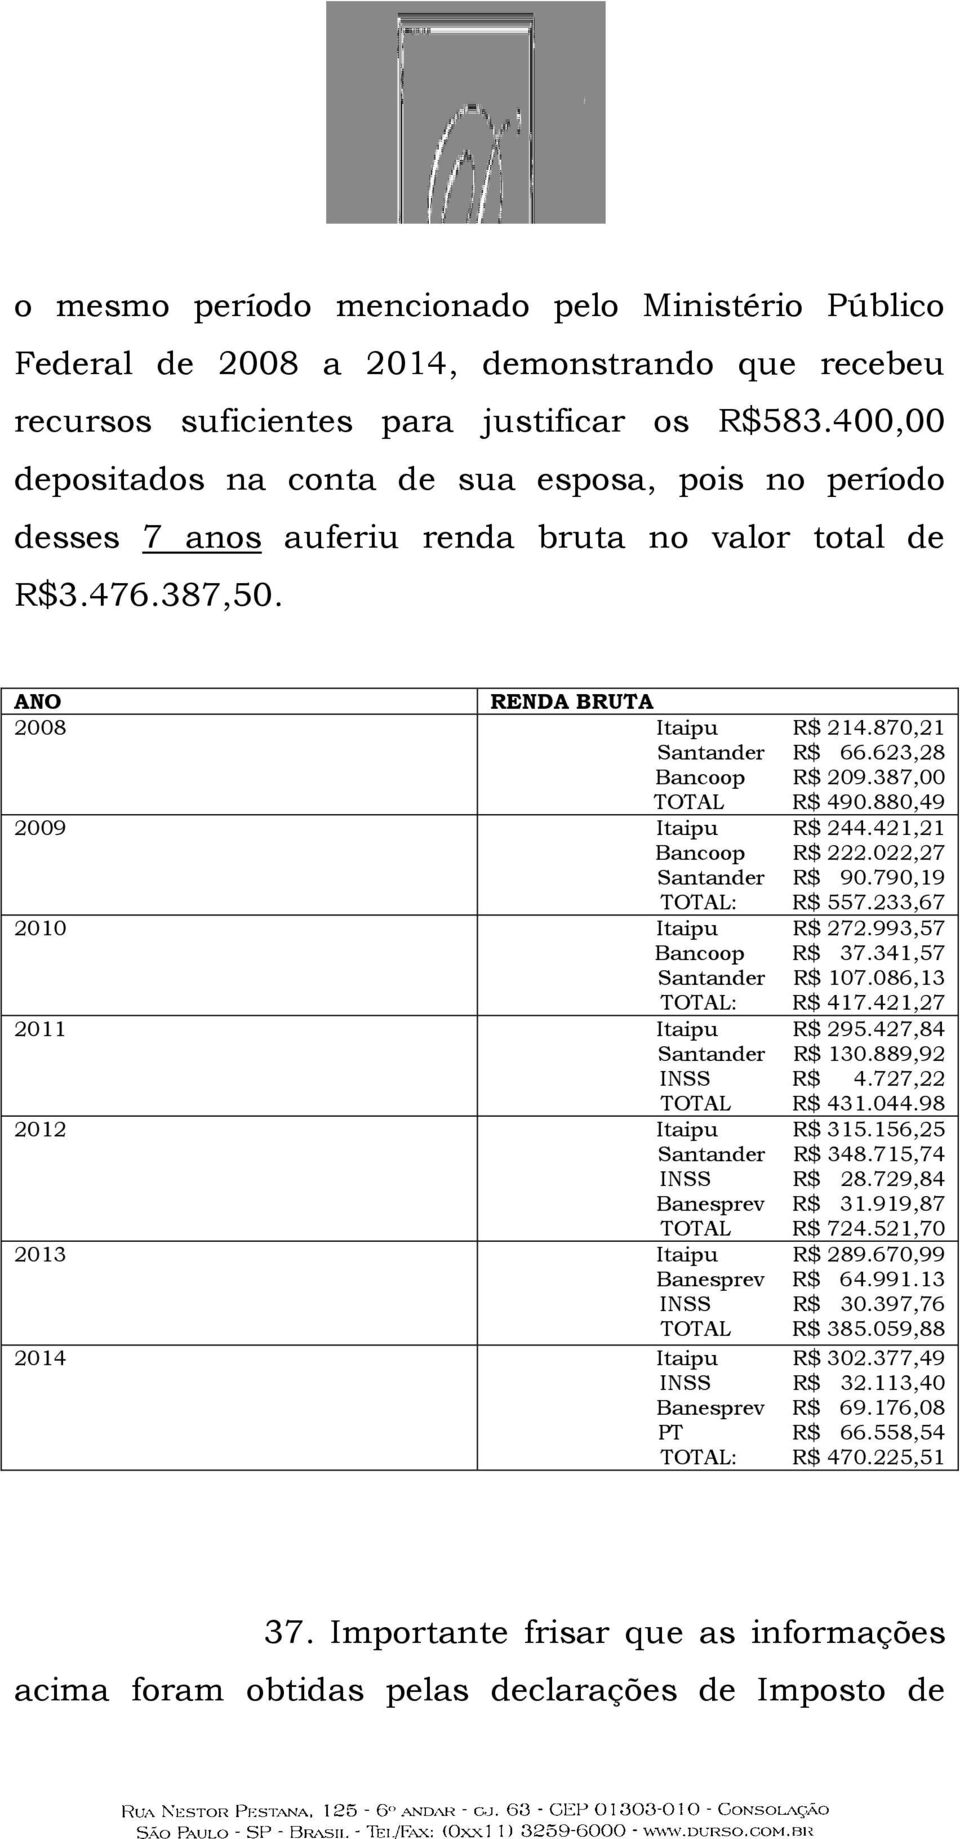 623,28 Bancoop R$ 209.387,00 TOTAL R$ 490.880,49 2009 Itaipu R$ 244.421,21 Bancoop R$ 222.022,27 Santander R$ 90.790,19 TOTAL: R$ 557.233,67 2010 Itaipu R$ 272.993,57 Bancoop R$ 37.